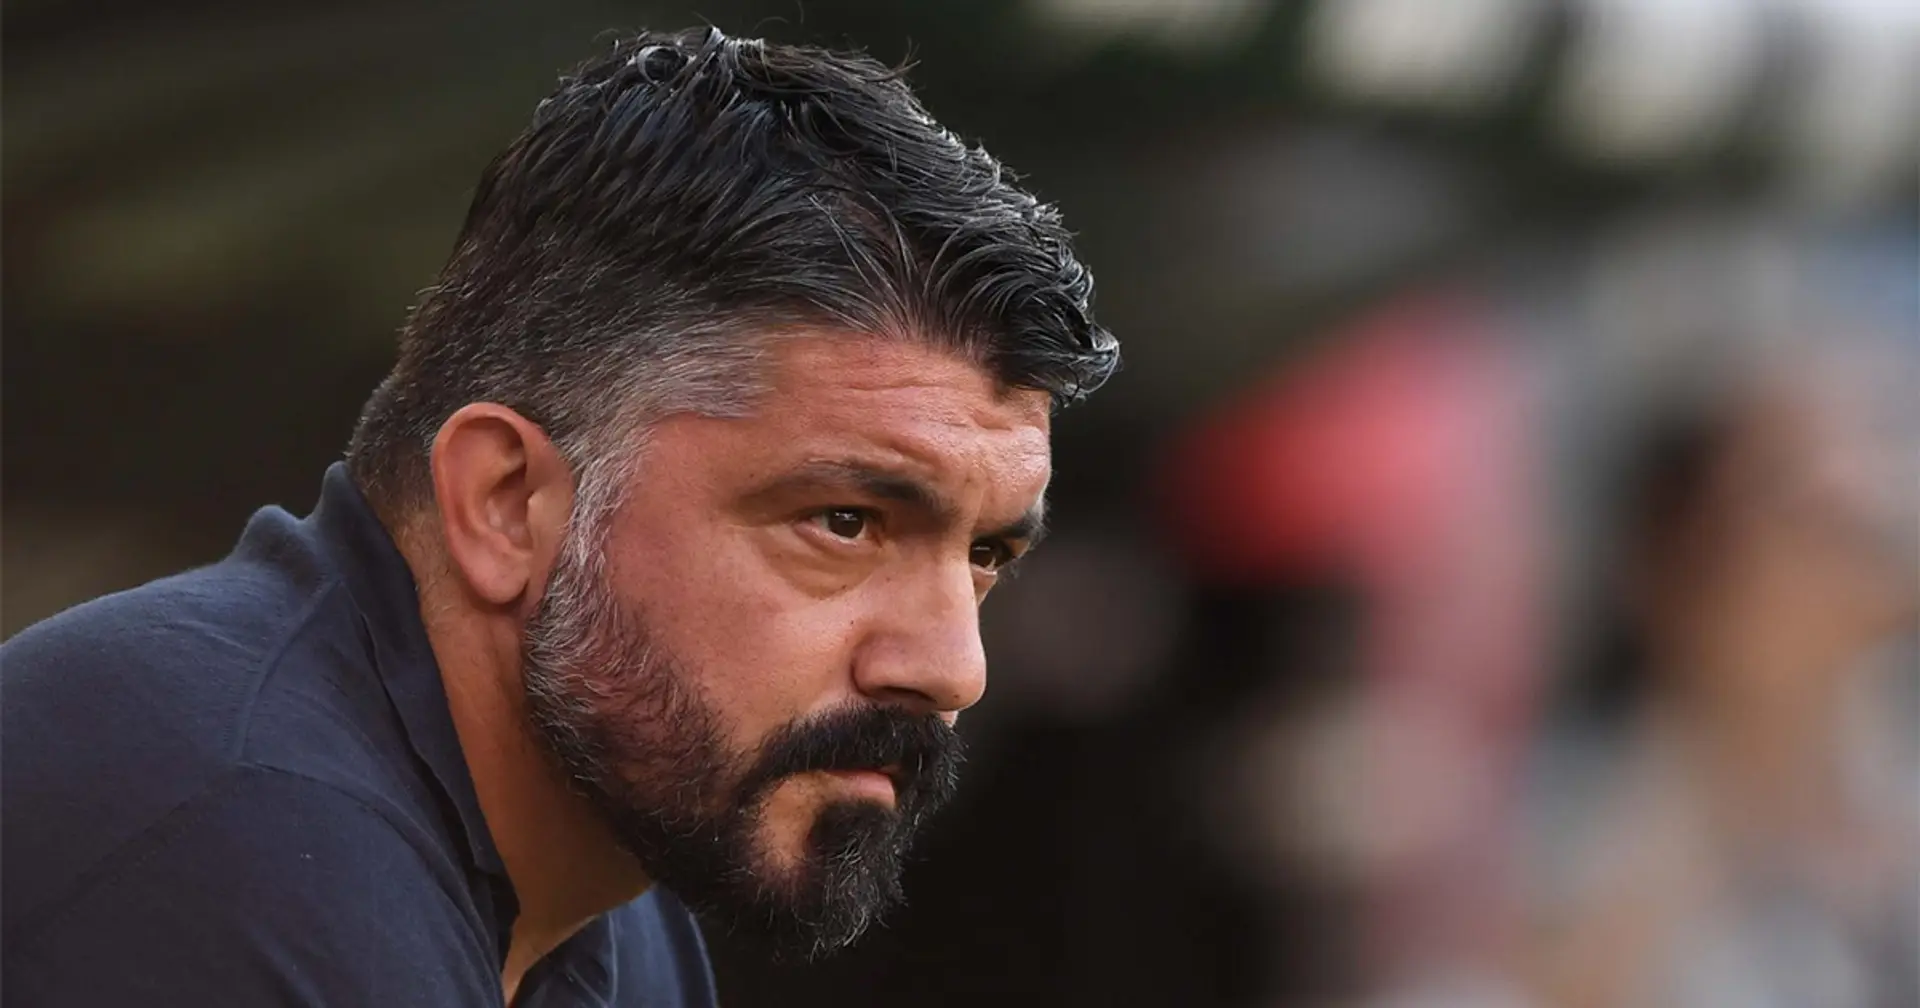 "Ho osservato come lavora e dico che allenatori come lui ne ho visti pochi": Abbiati esalta Gattuso in vista di Napoli-Milan